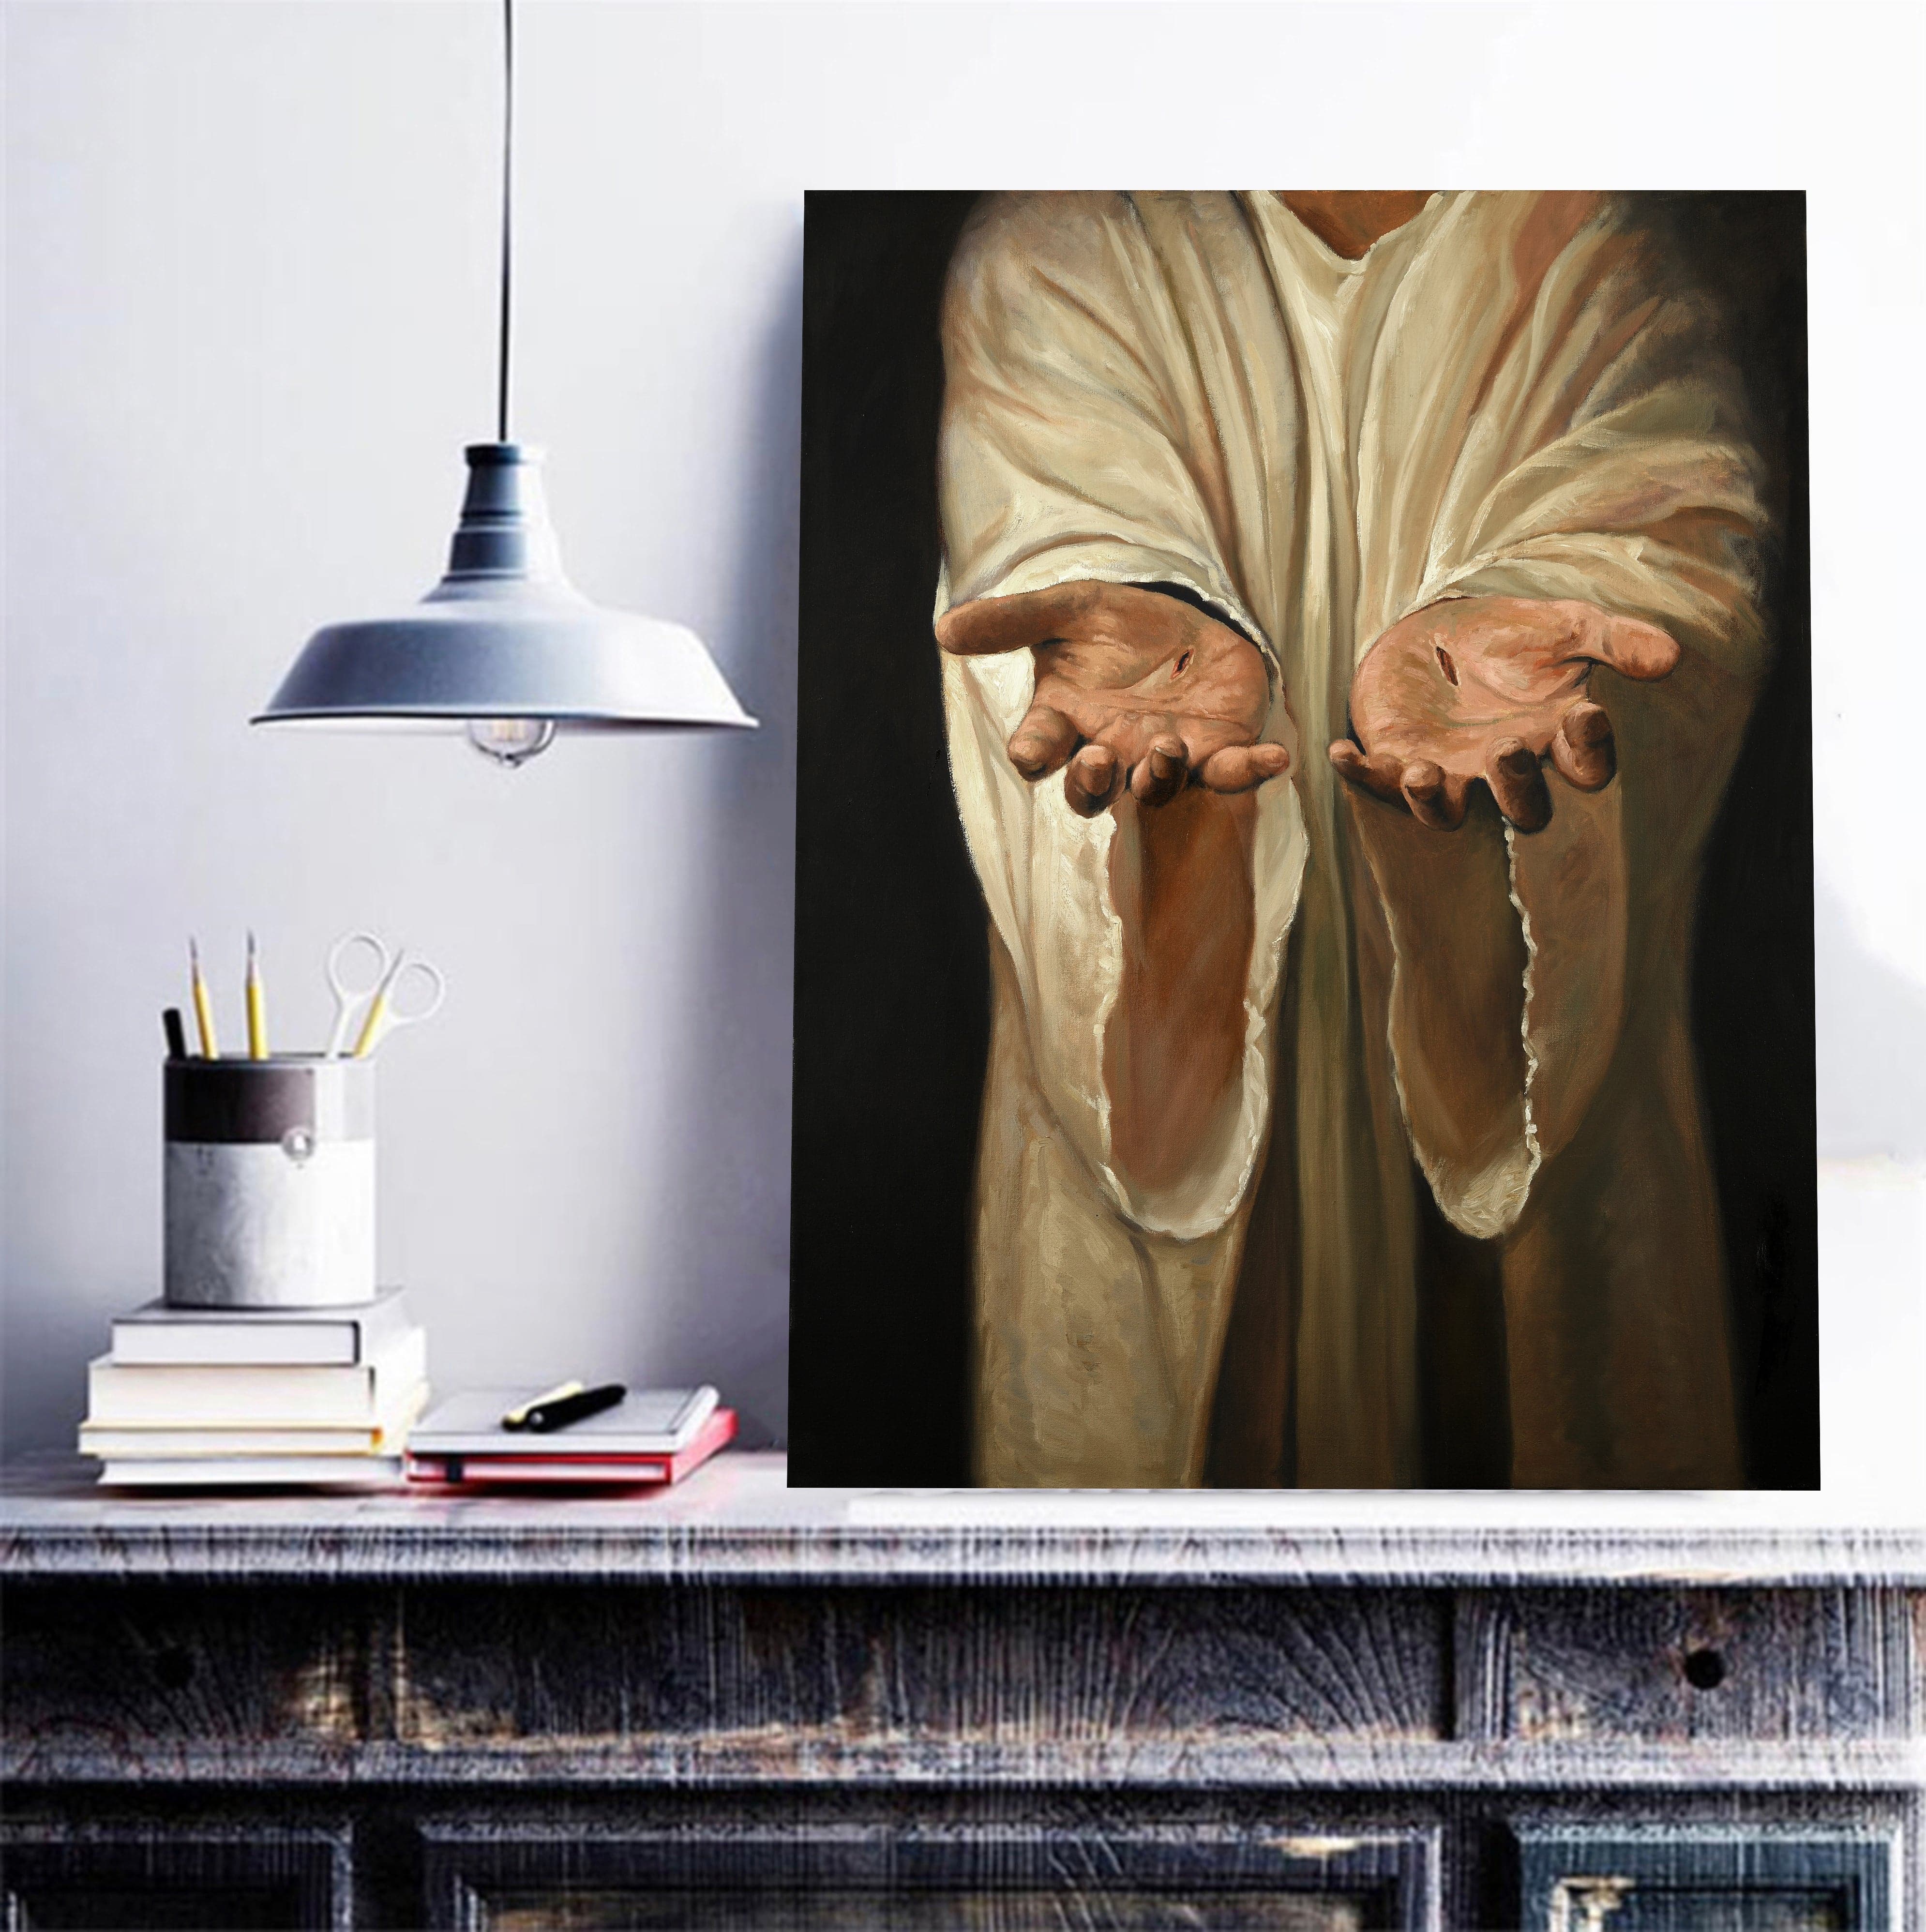 Framed 1 Panel - Hands of Jesus